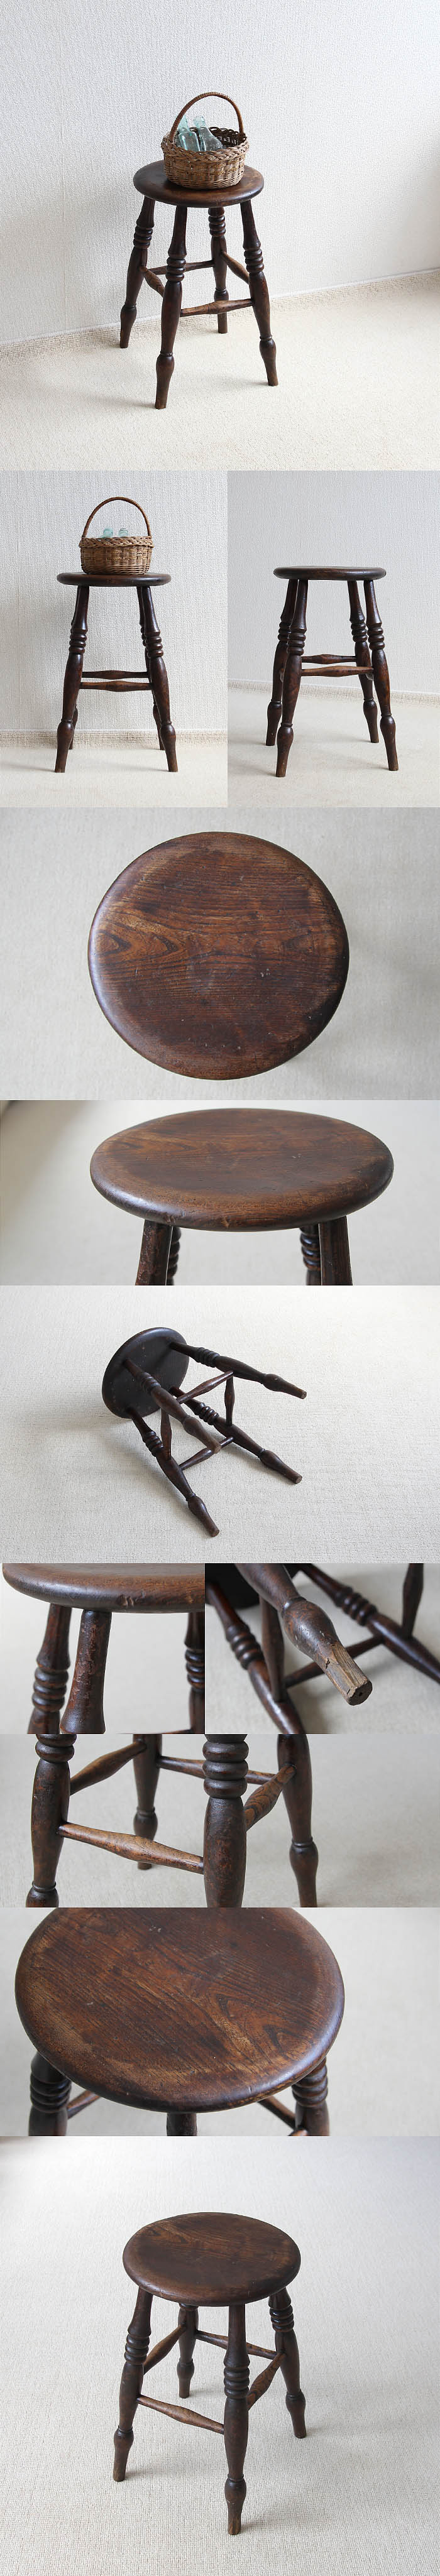 イギリス アンティーク スツール 無垢材 一枚板座面 椅子 古木 木製 家具 V-301